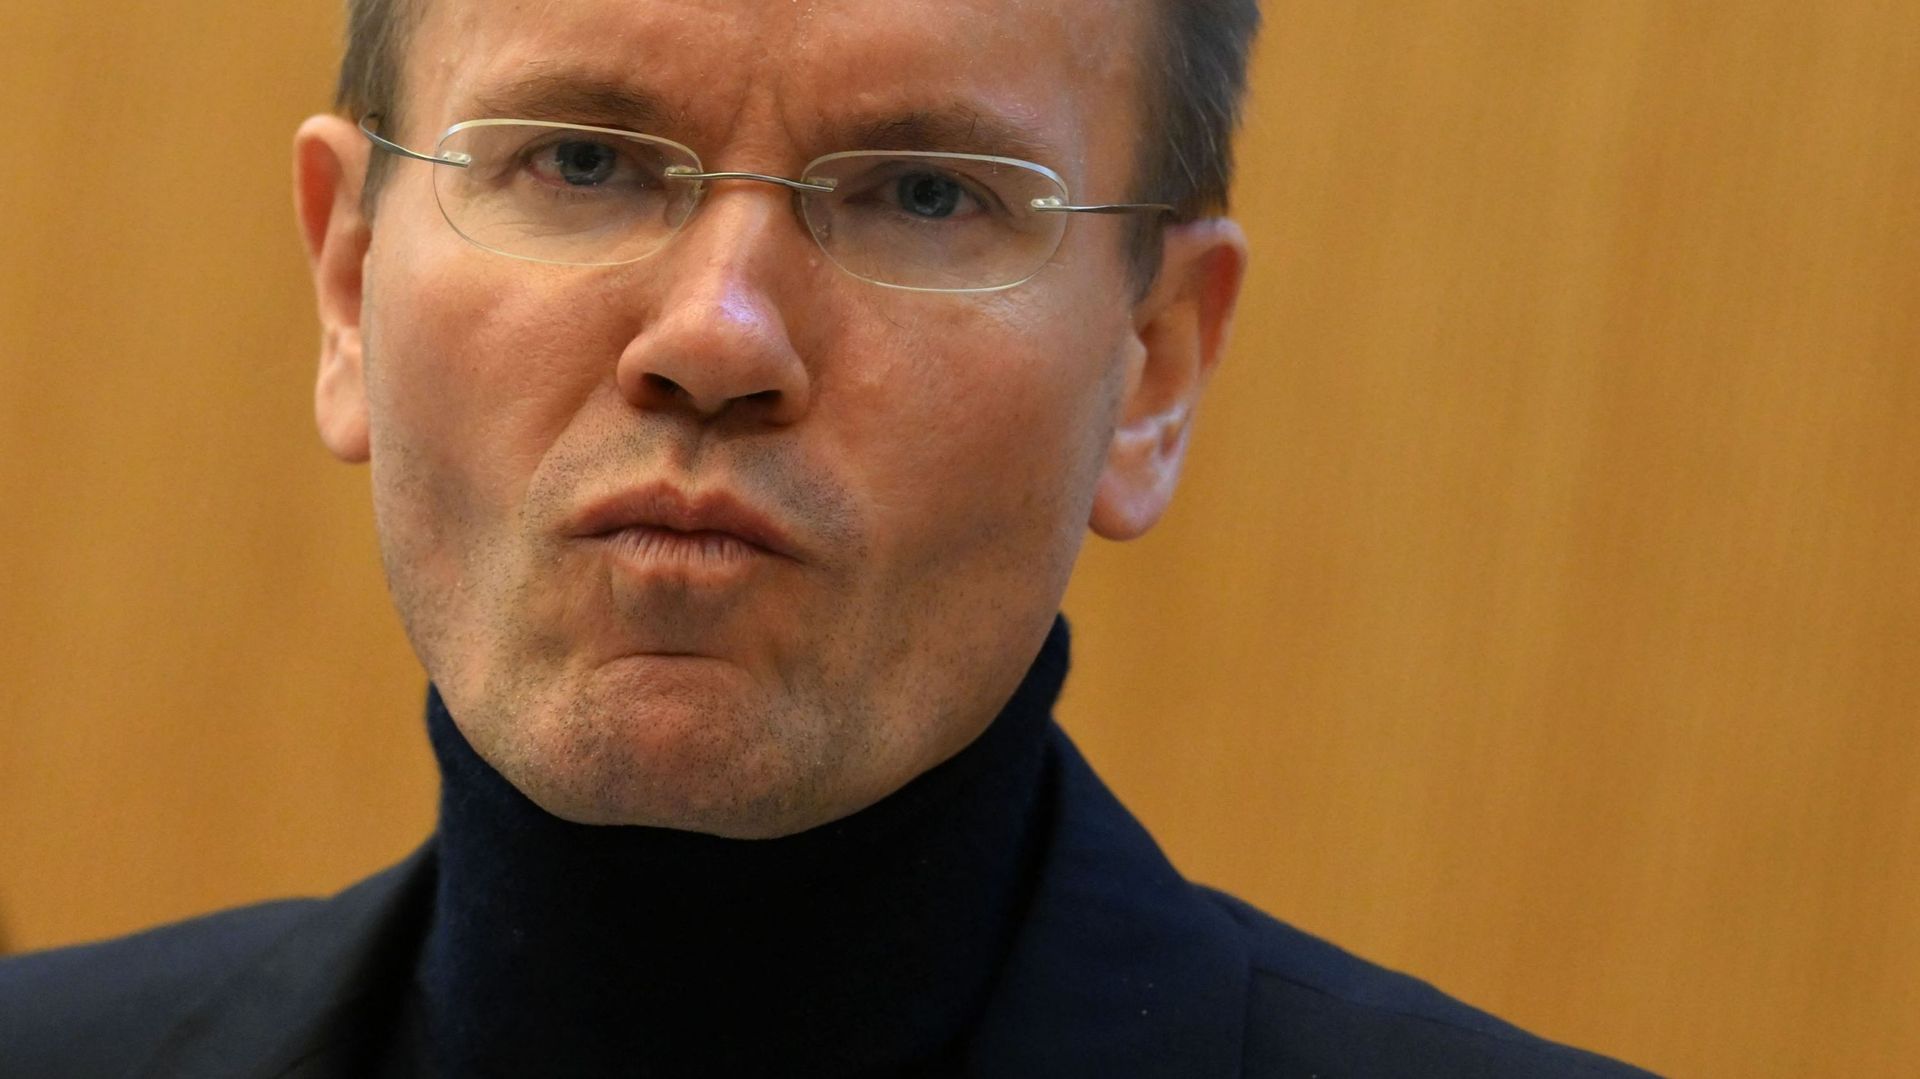 L’ancien PDG de Wirecard, Markus Braun, attend dans une salle d’audience du tribunal de district de Munich, dans le sud de l’Allemagne, le 8 décembre 2022, le début de son procès pour fraude en bande commerciale, abus de confiance, manipulation de marché 